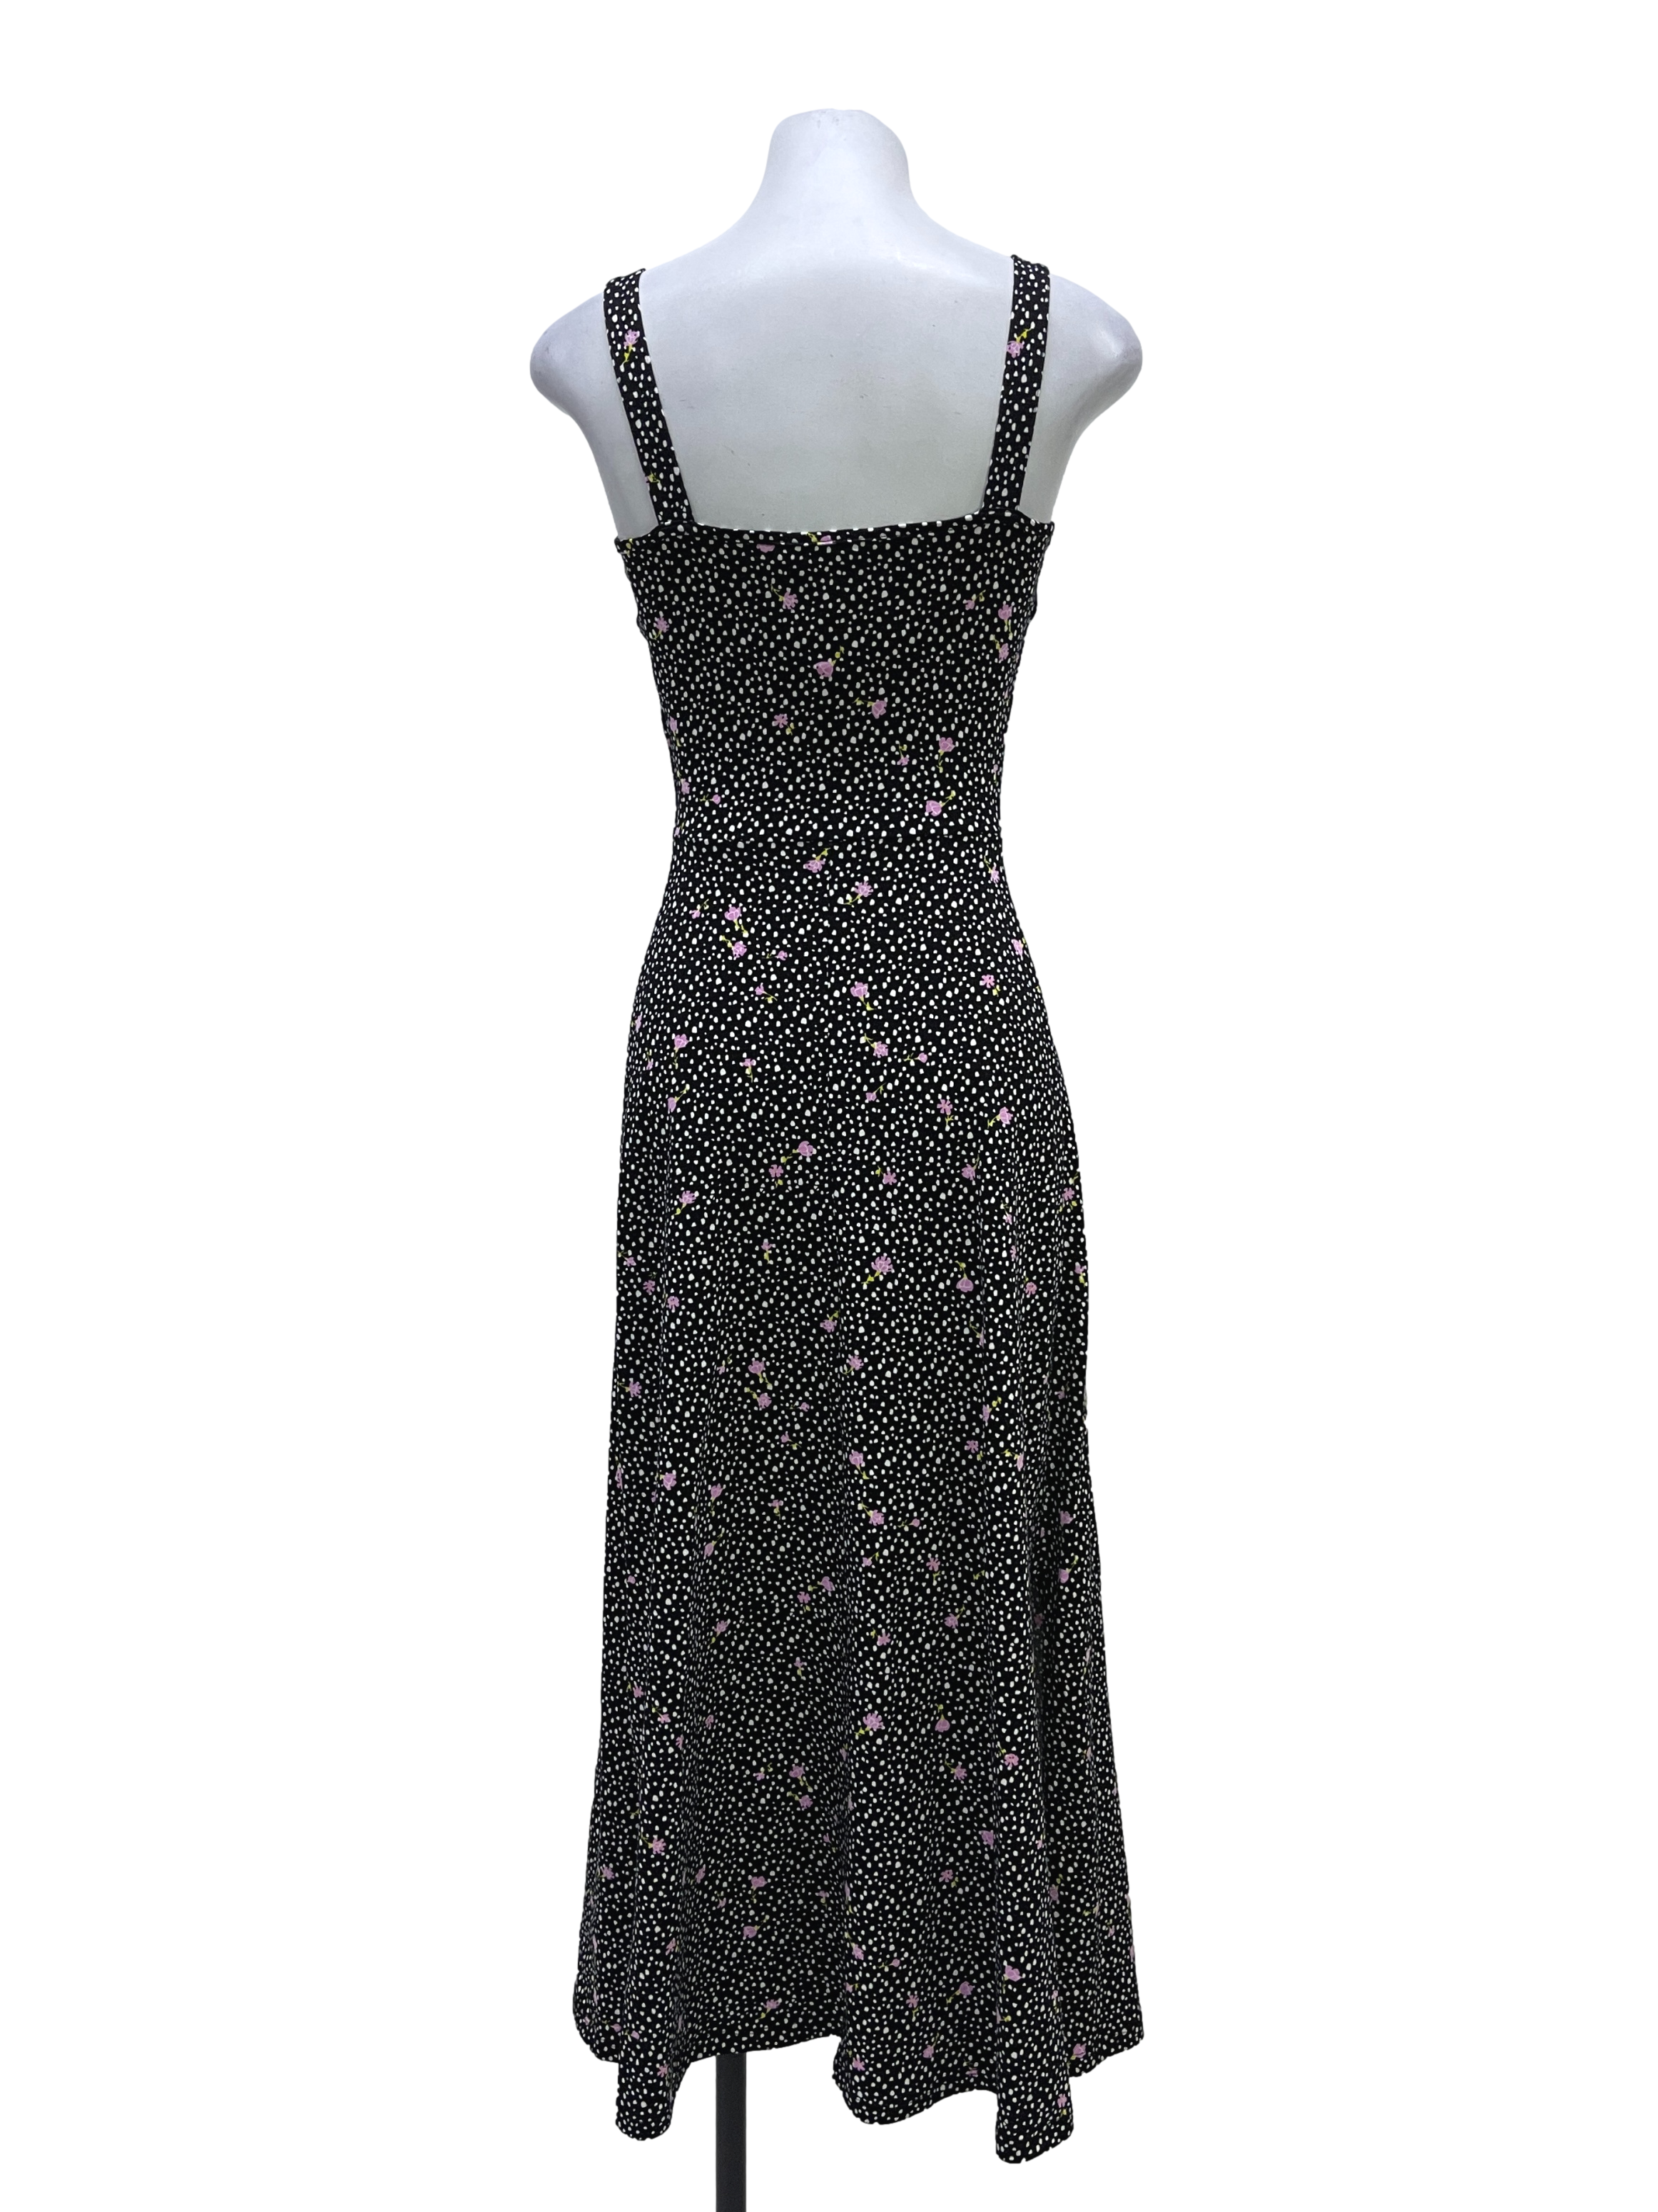 Black Polka Dots Dress